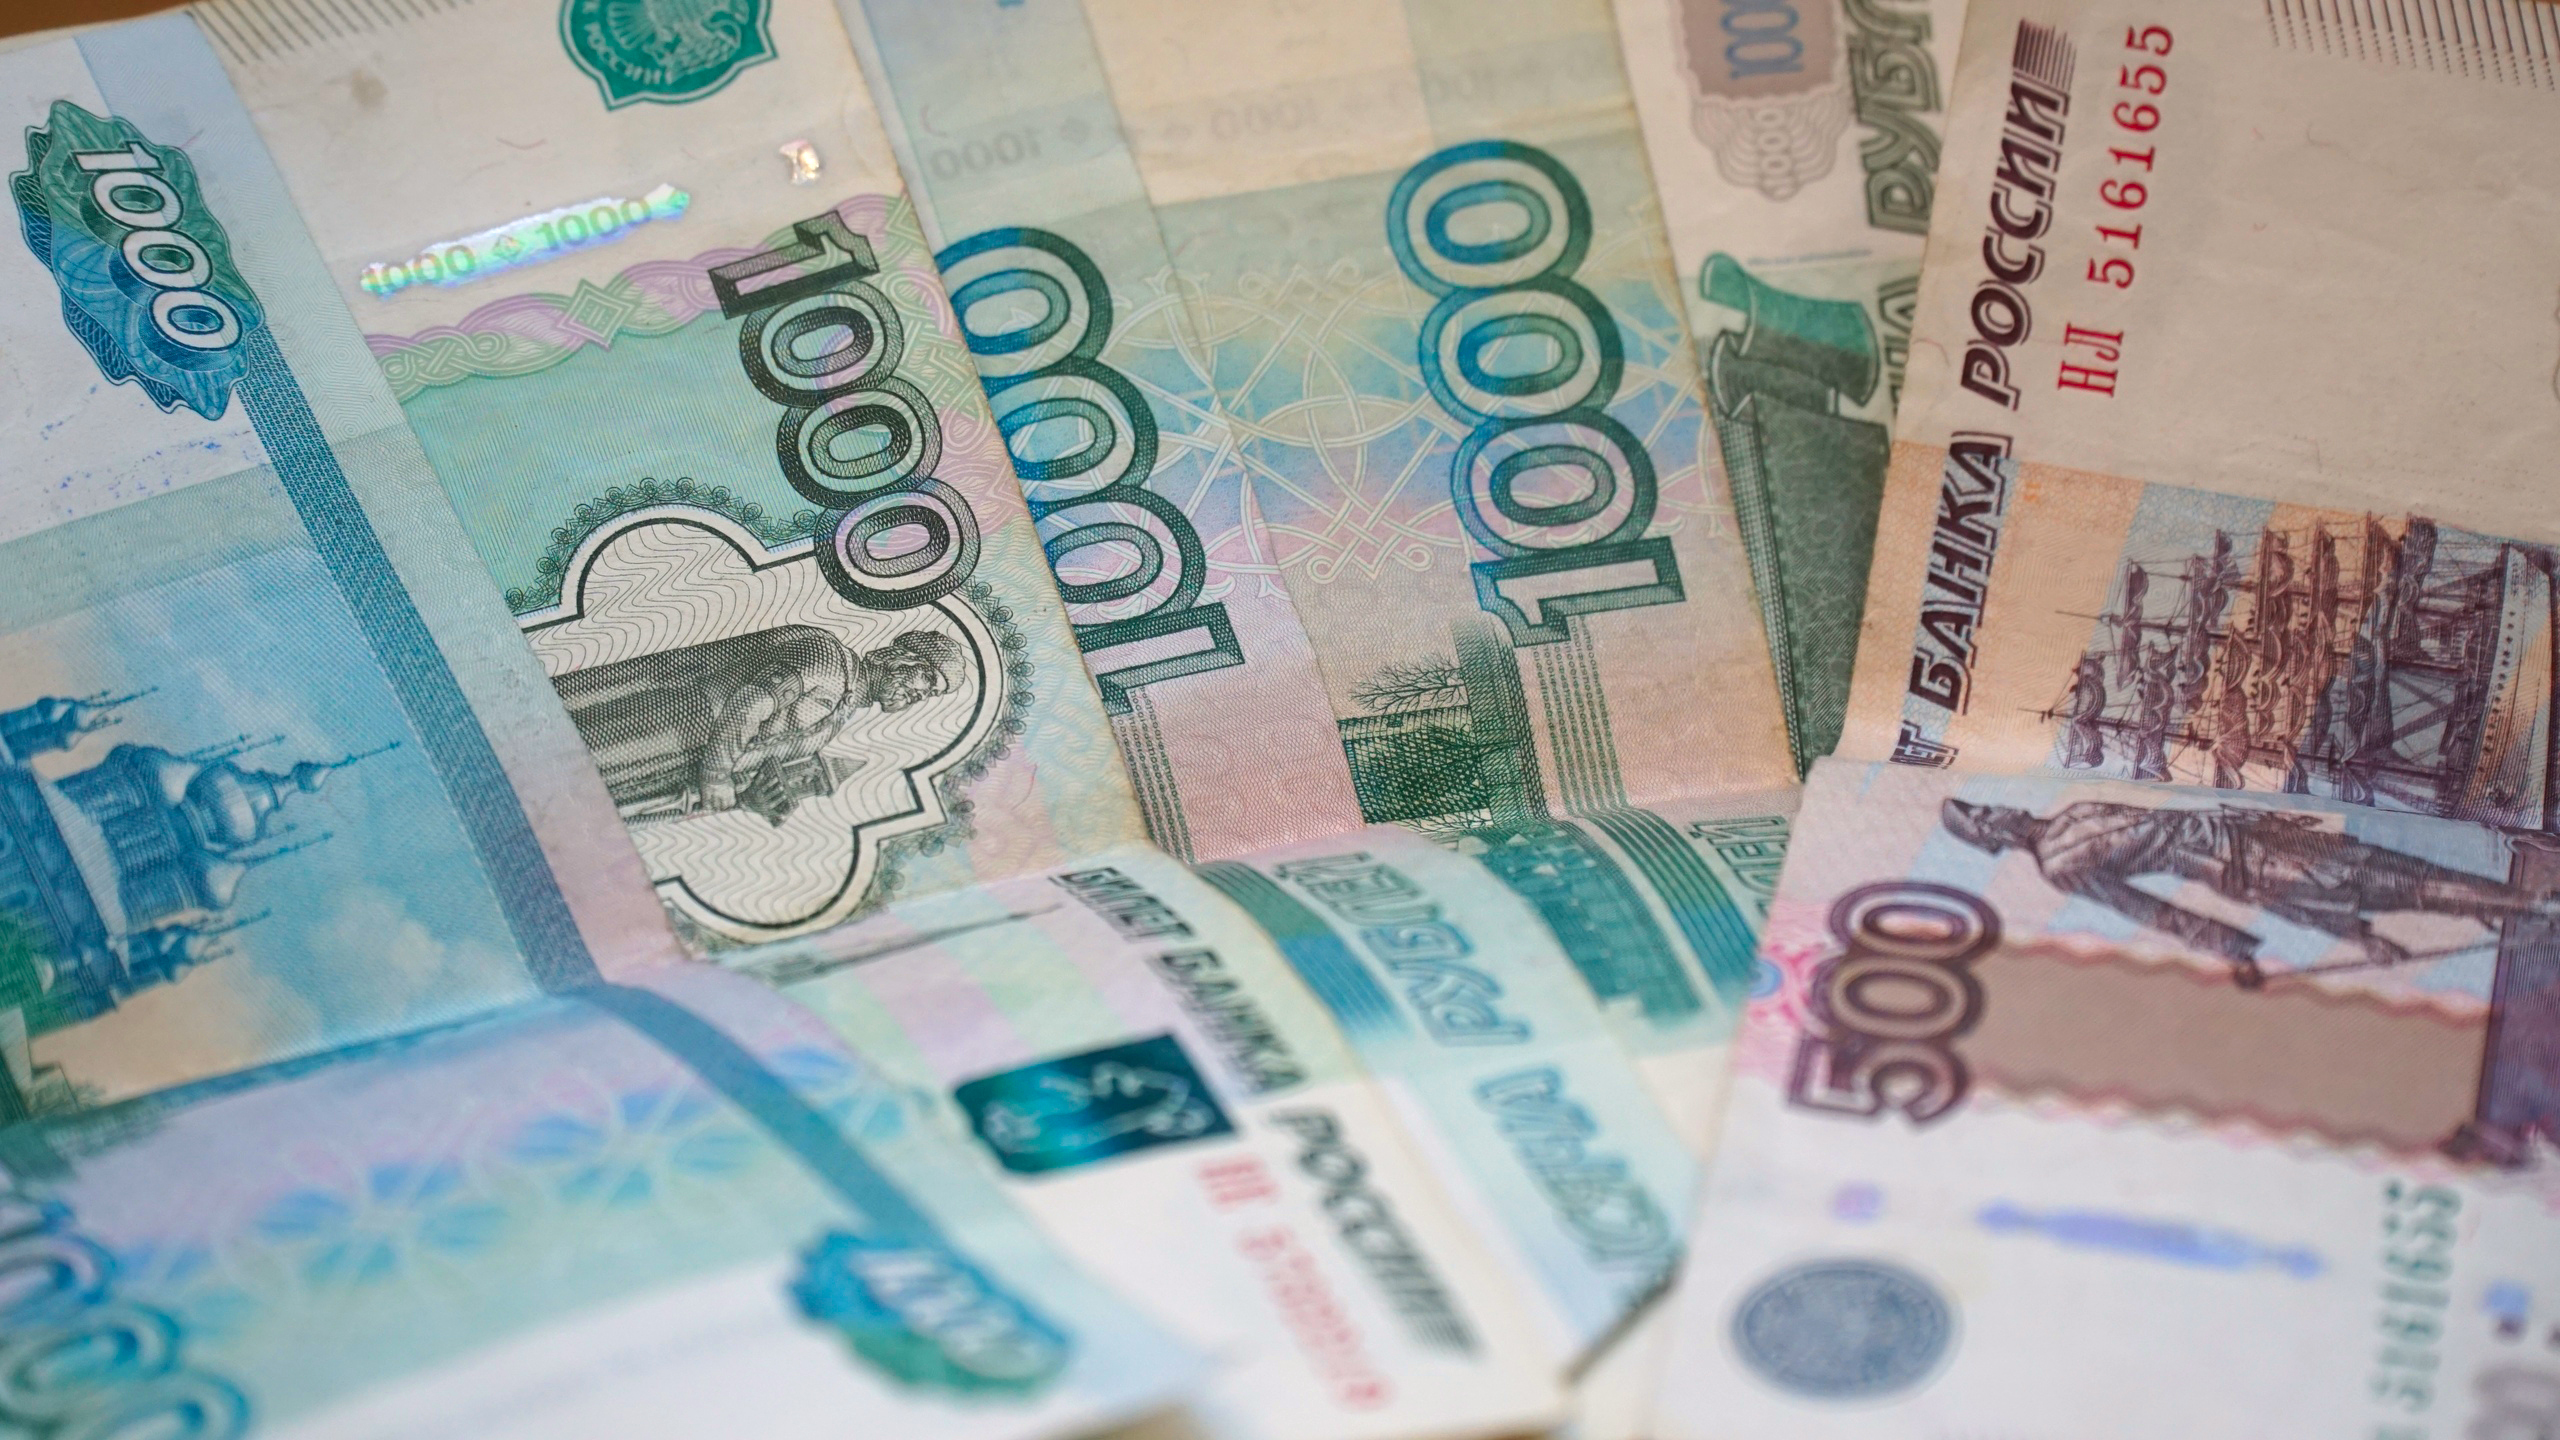 ООО «Белдорстрой» не смогло добиться отмены штрафа в 50 тысяч рублей